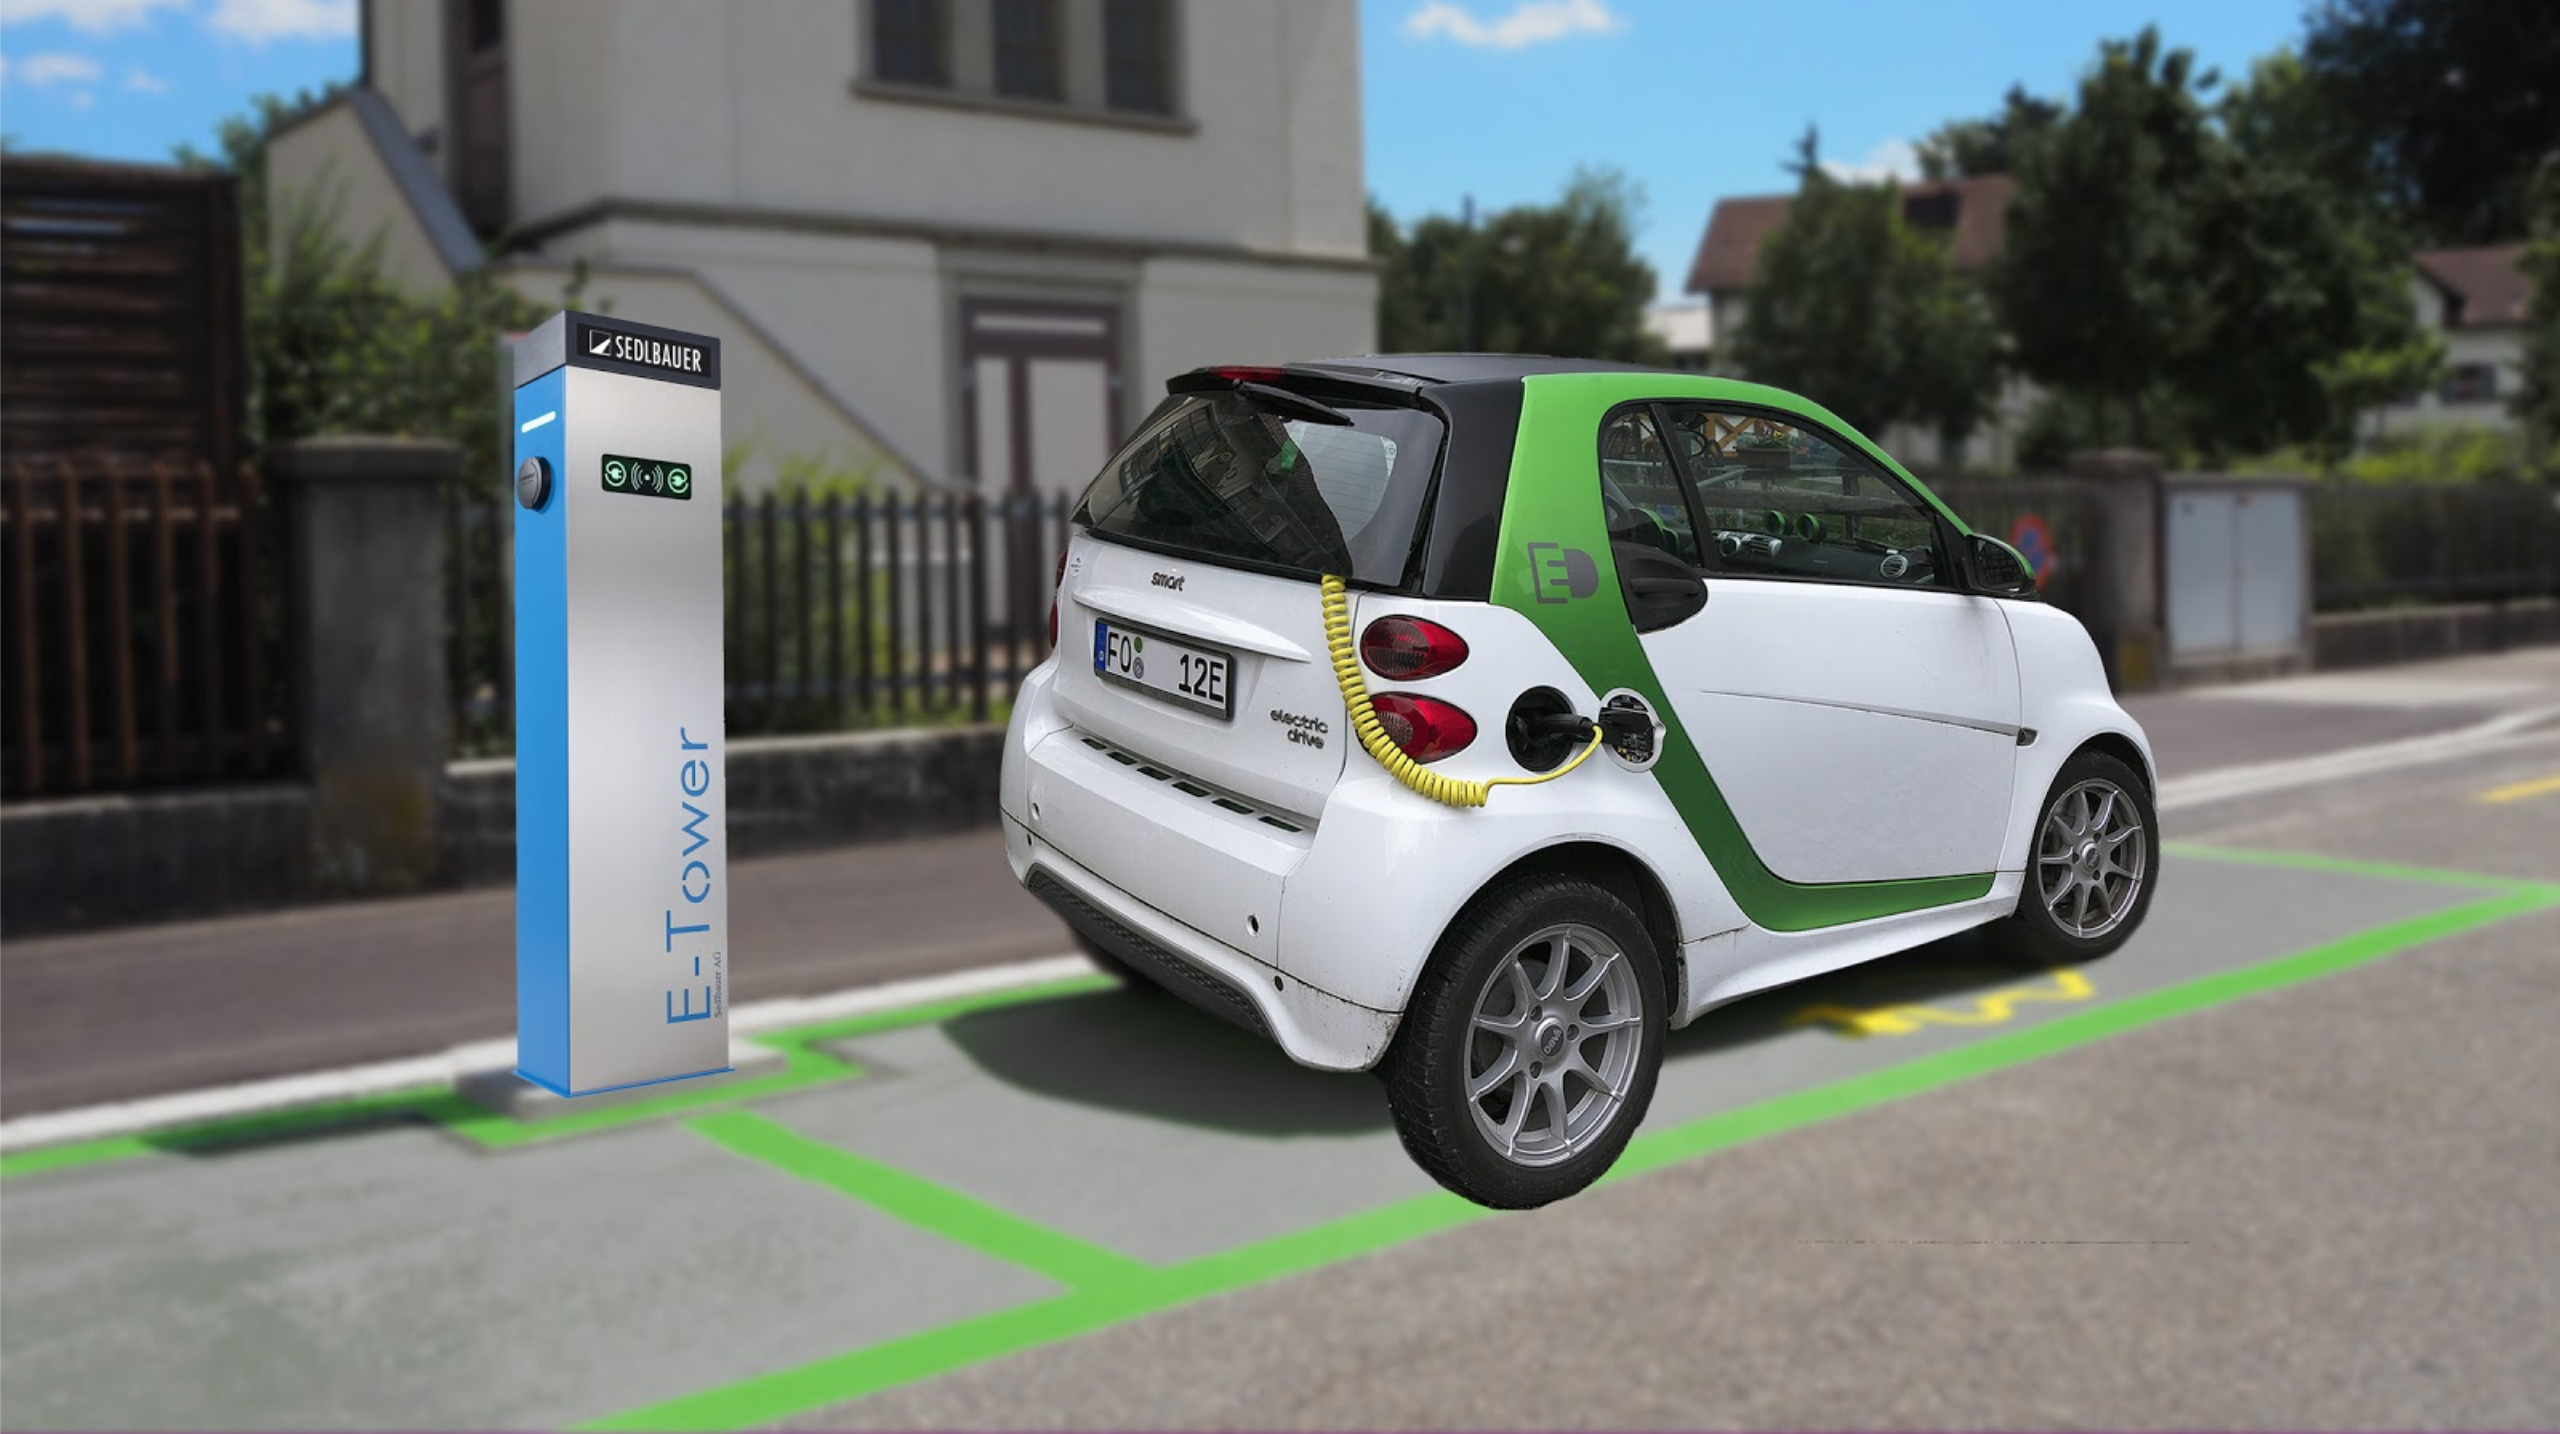 Création de zones vertes pour les véhicules électriques (47)